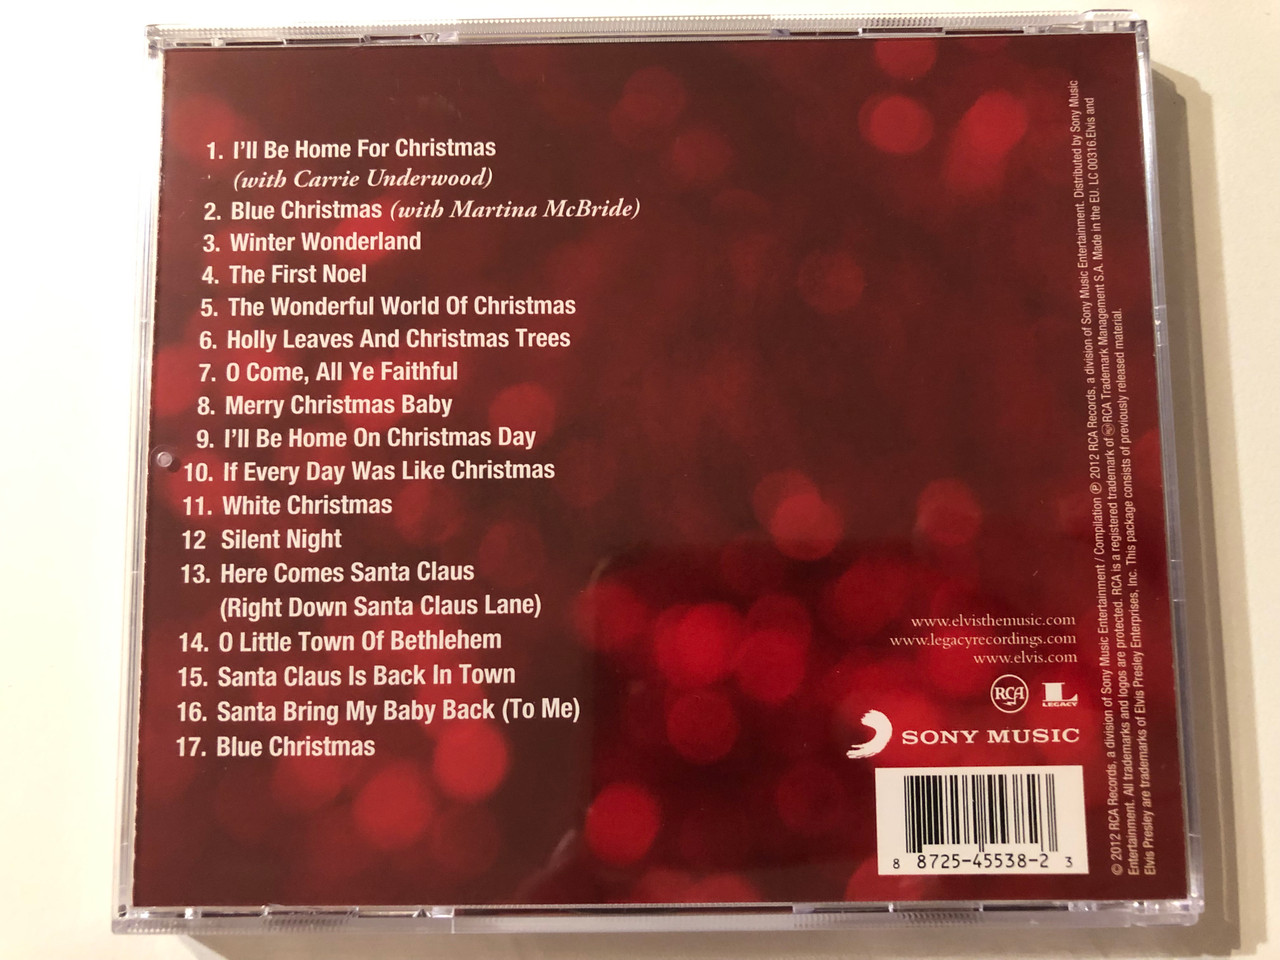 https://cdn10.bigcommerce.com/s-62bdpkt7pb/products/0/images/276135/Elvis_Presley_The_Classic_Christmas_Album_RCA_Audio_CD_2012_88725455382_2__30148.1686158816.1280.1280.JPG?c=2&_gl=1*p3k8e4*_ga*MjA2NTIxMjE2MC4xNTkwNTEyNTMy*_ga_WS2VZYPC6G*MTY4NjE0NjEyNC45MzEuMS4xNjg2MTU4NzIzLjEzLjAuMA..